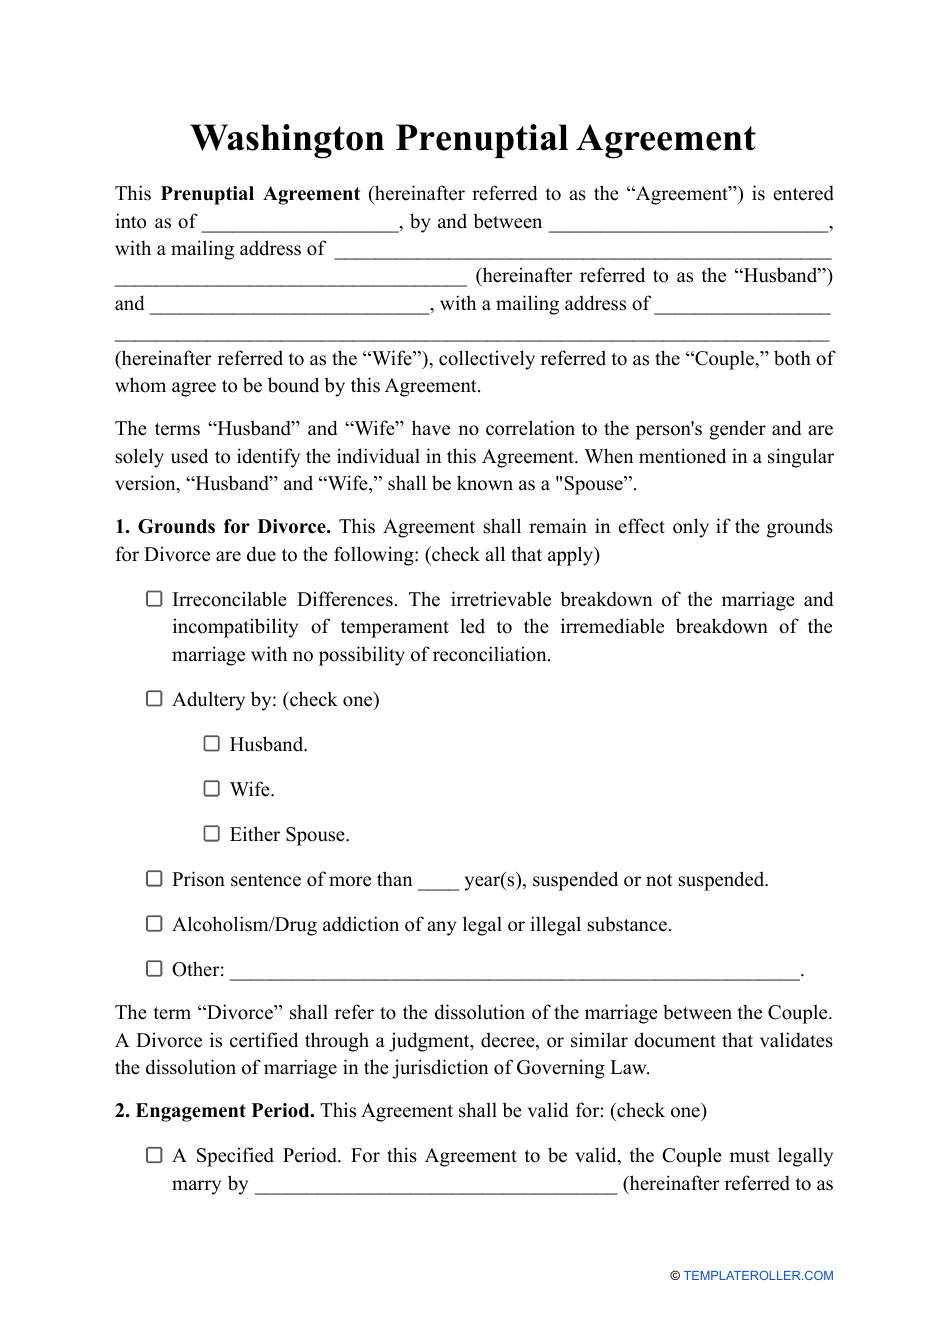 Prenuptial Agreement Template - Washington, Page 1